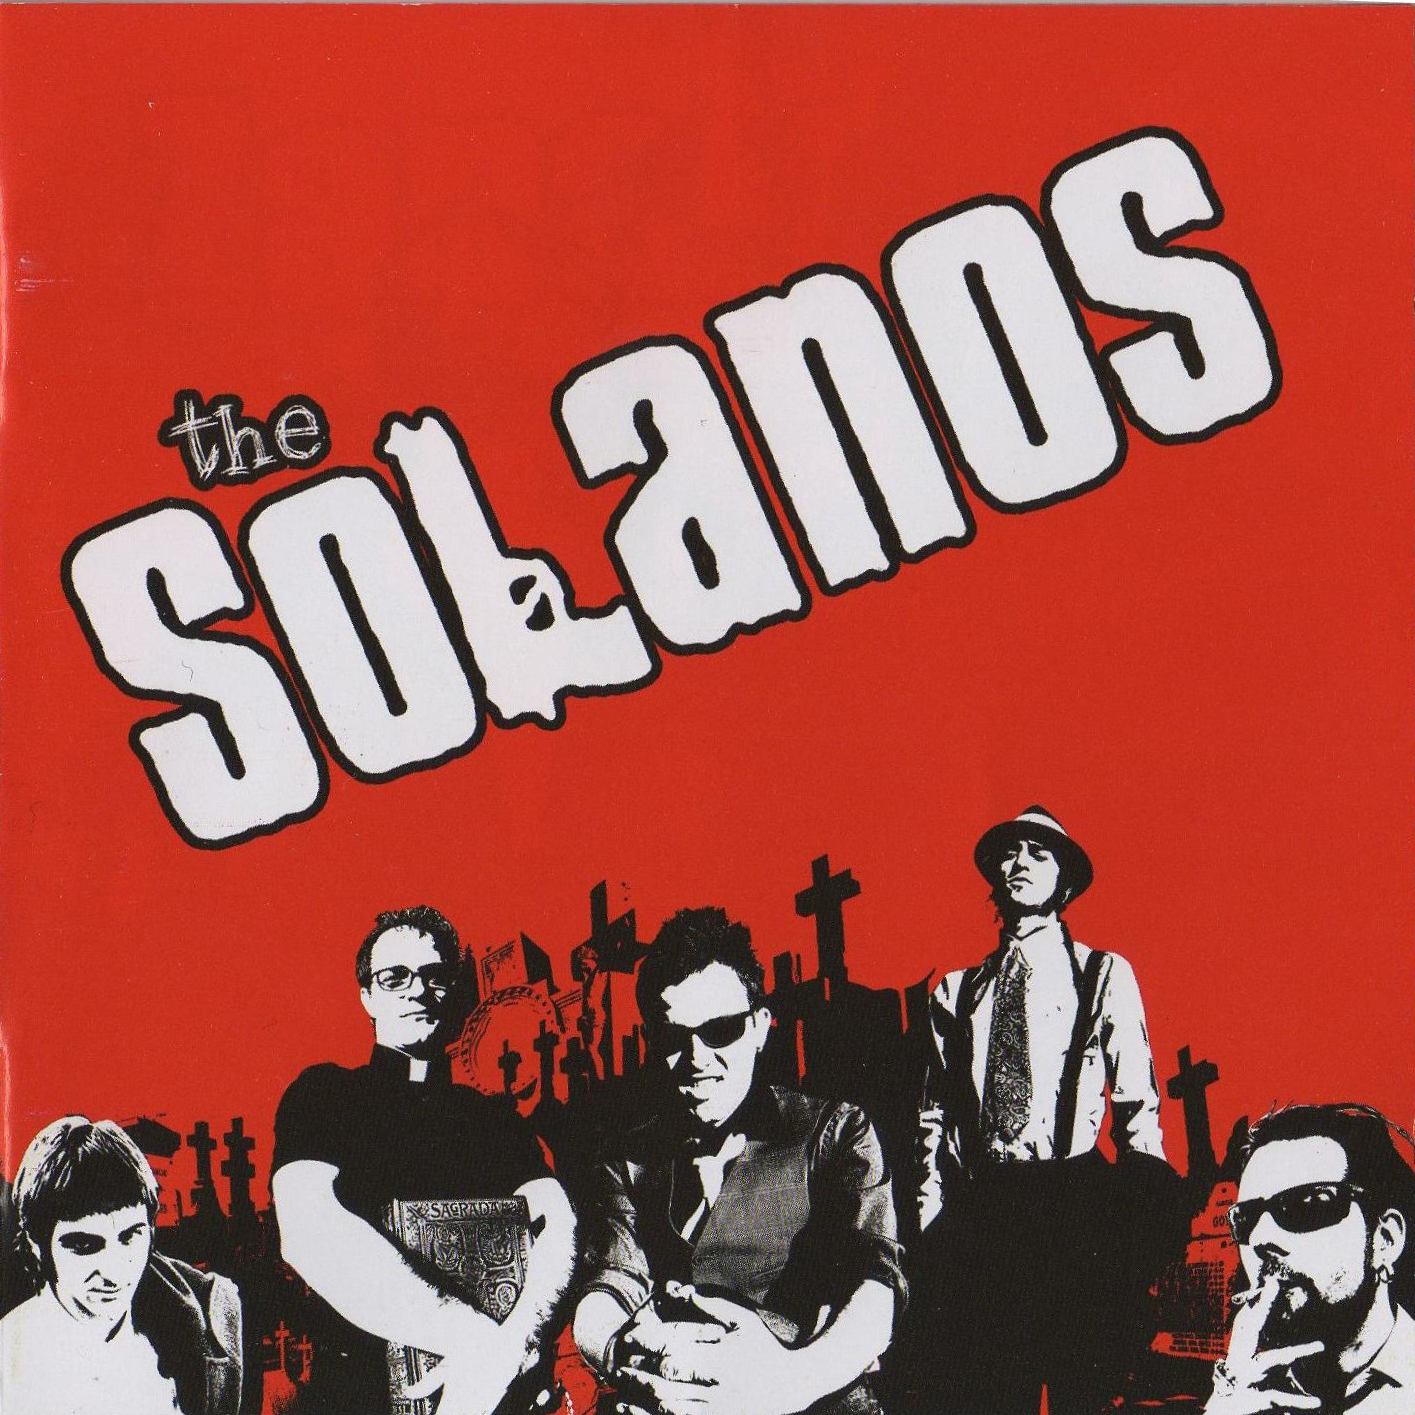 [The+solanos+001.jpg]